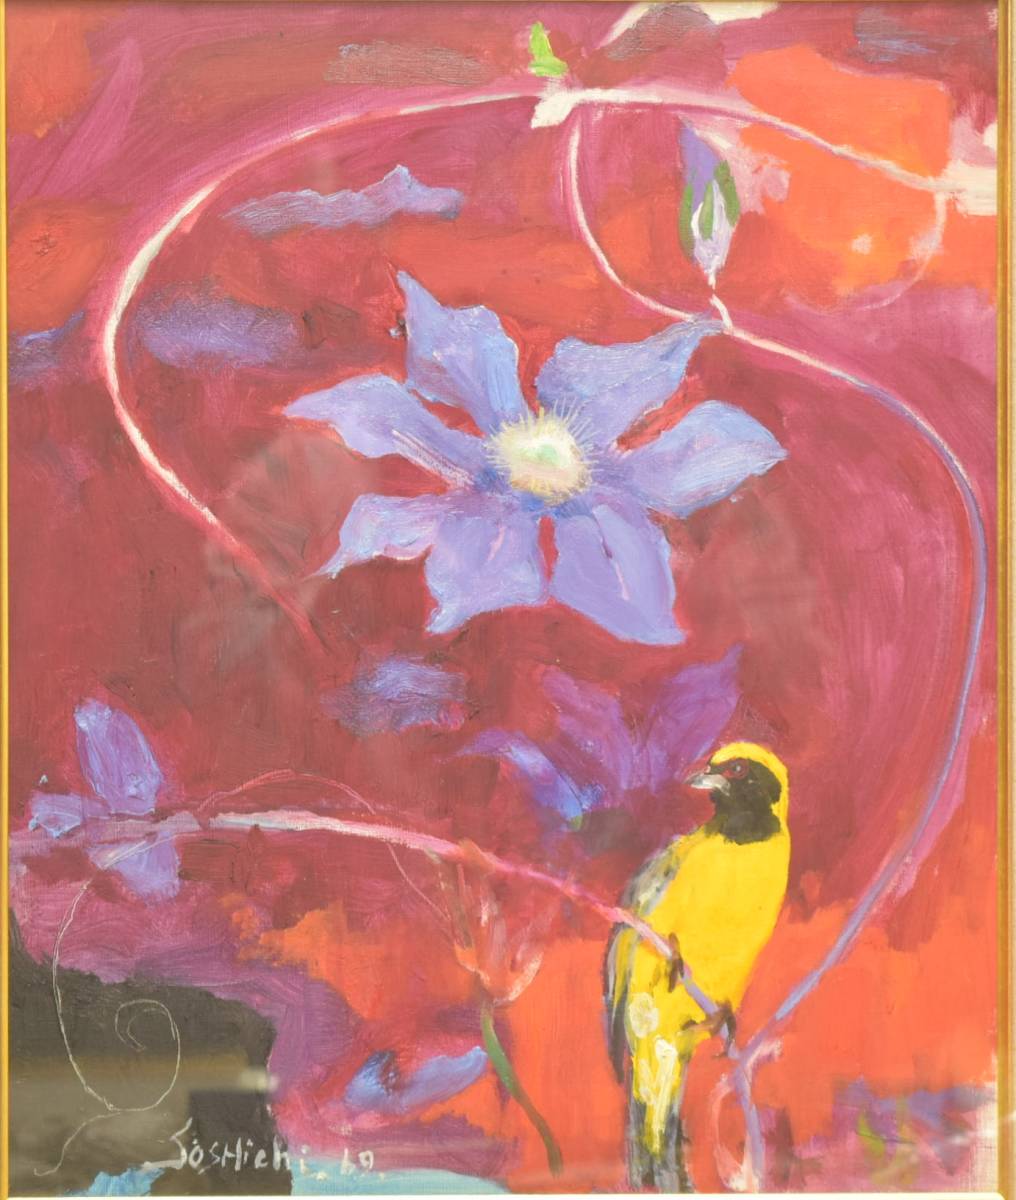 다카마 소시치 1969년 [테시바와 노란 새] 유화 No. 8 정품, 그림, 오일 페인팅, 추상 회화